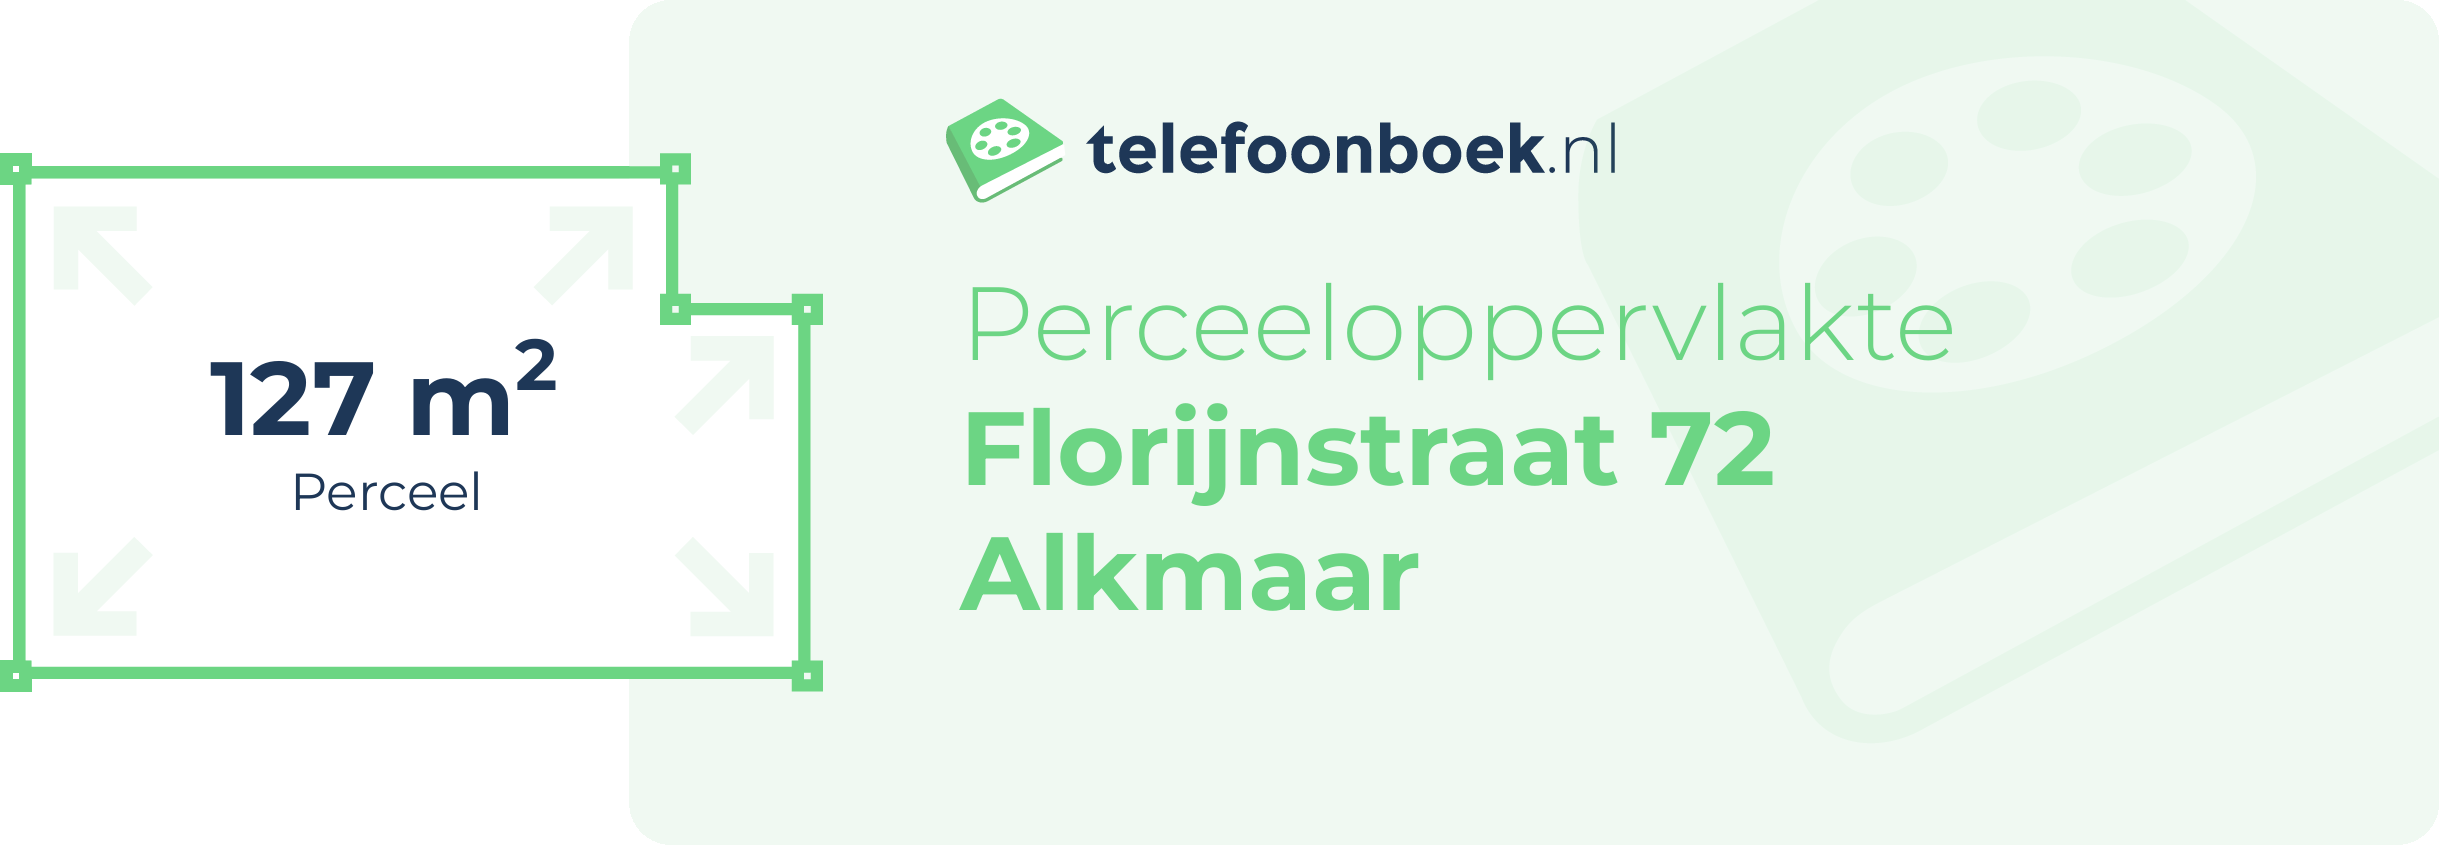 Perceeloppervlakte Florijnstraat 72 Alkmaar